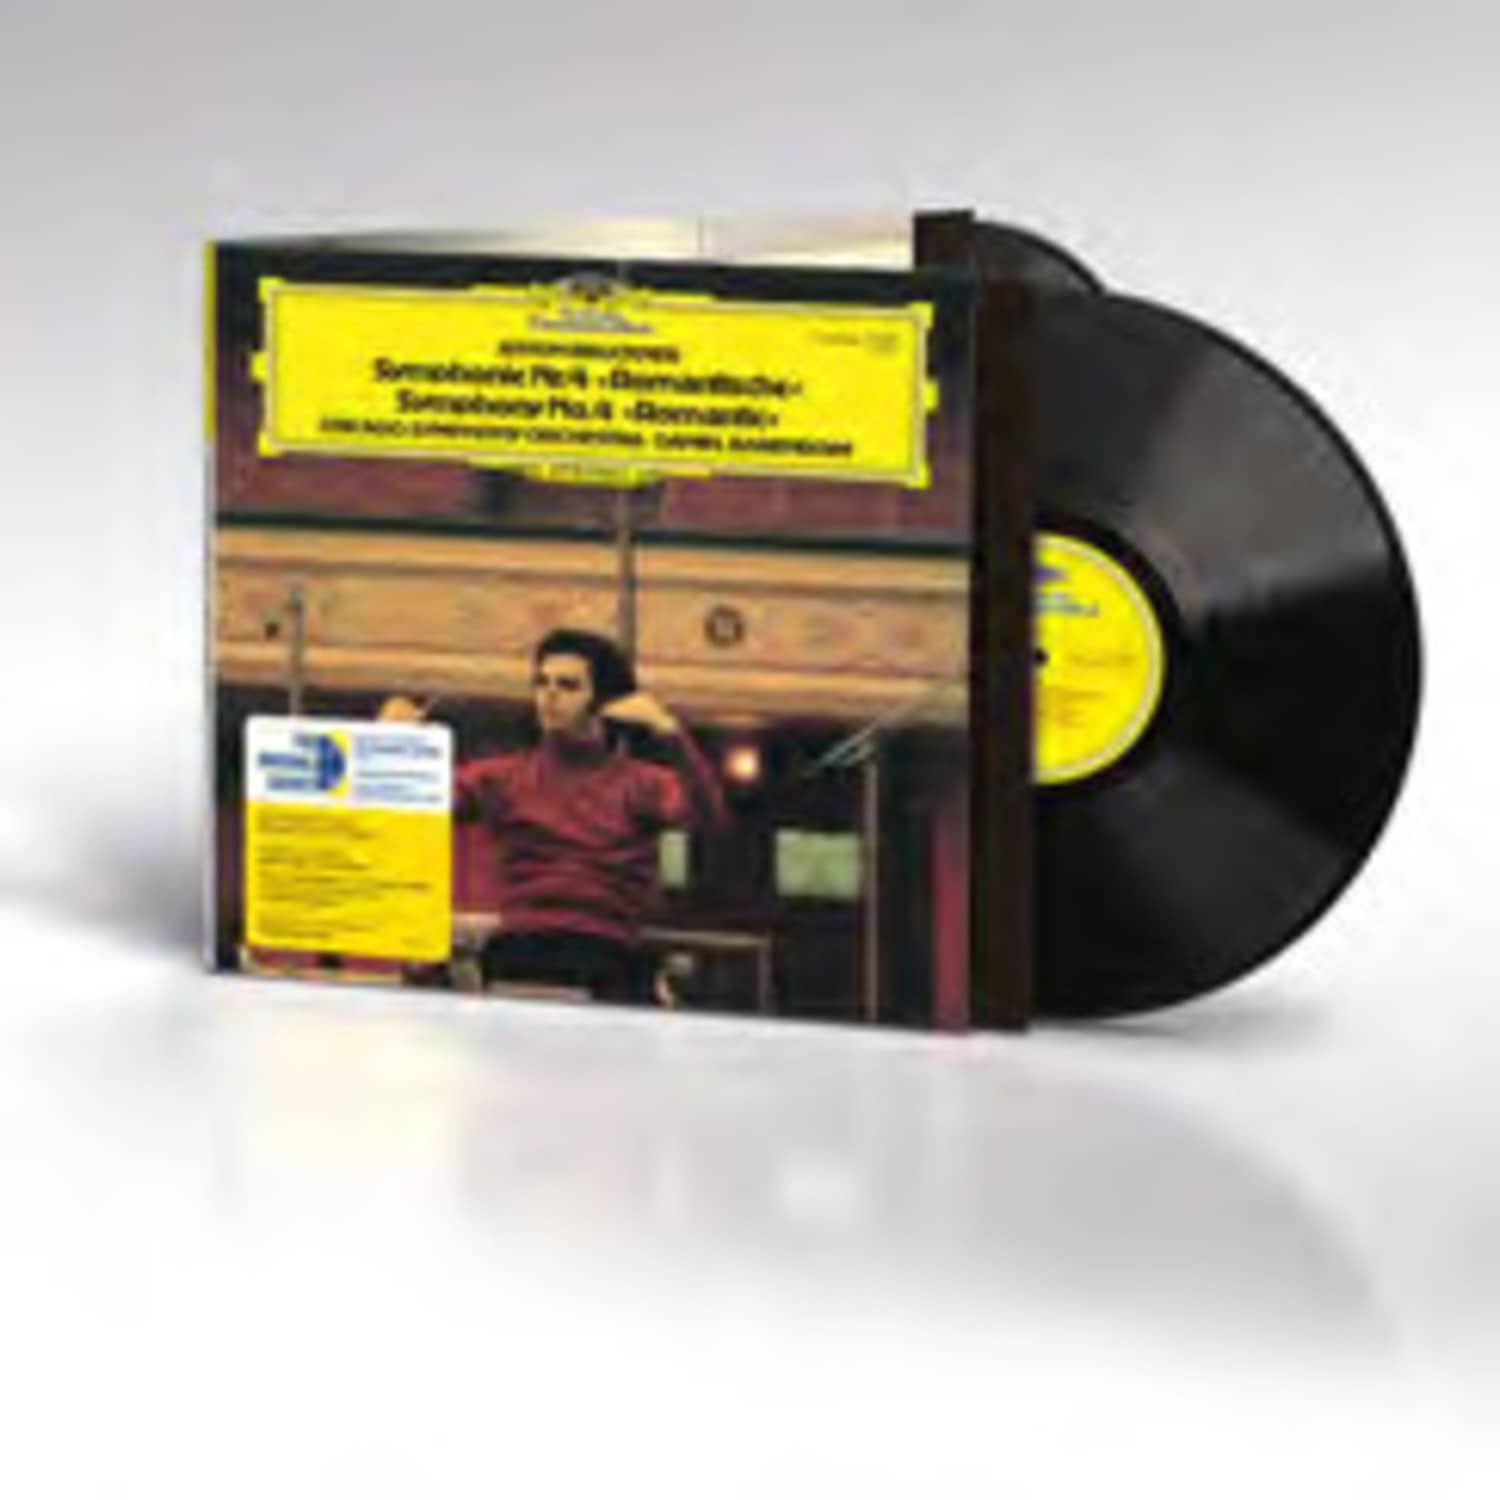 Claudio Abbado / Wiener Philharmoniker - BRAHMS:SINFONIE NR.1 